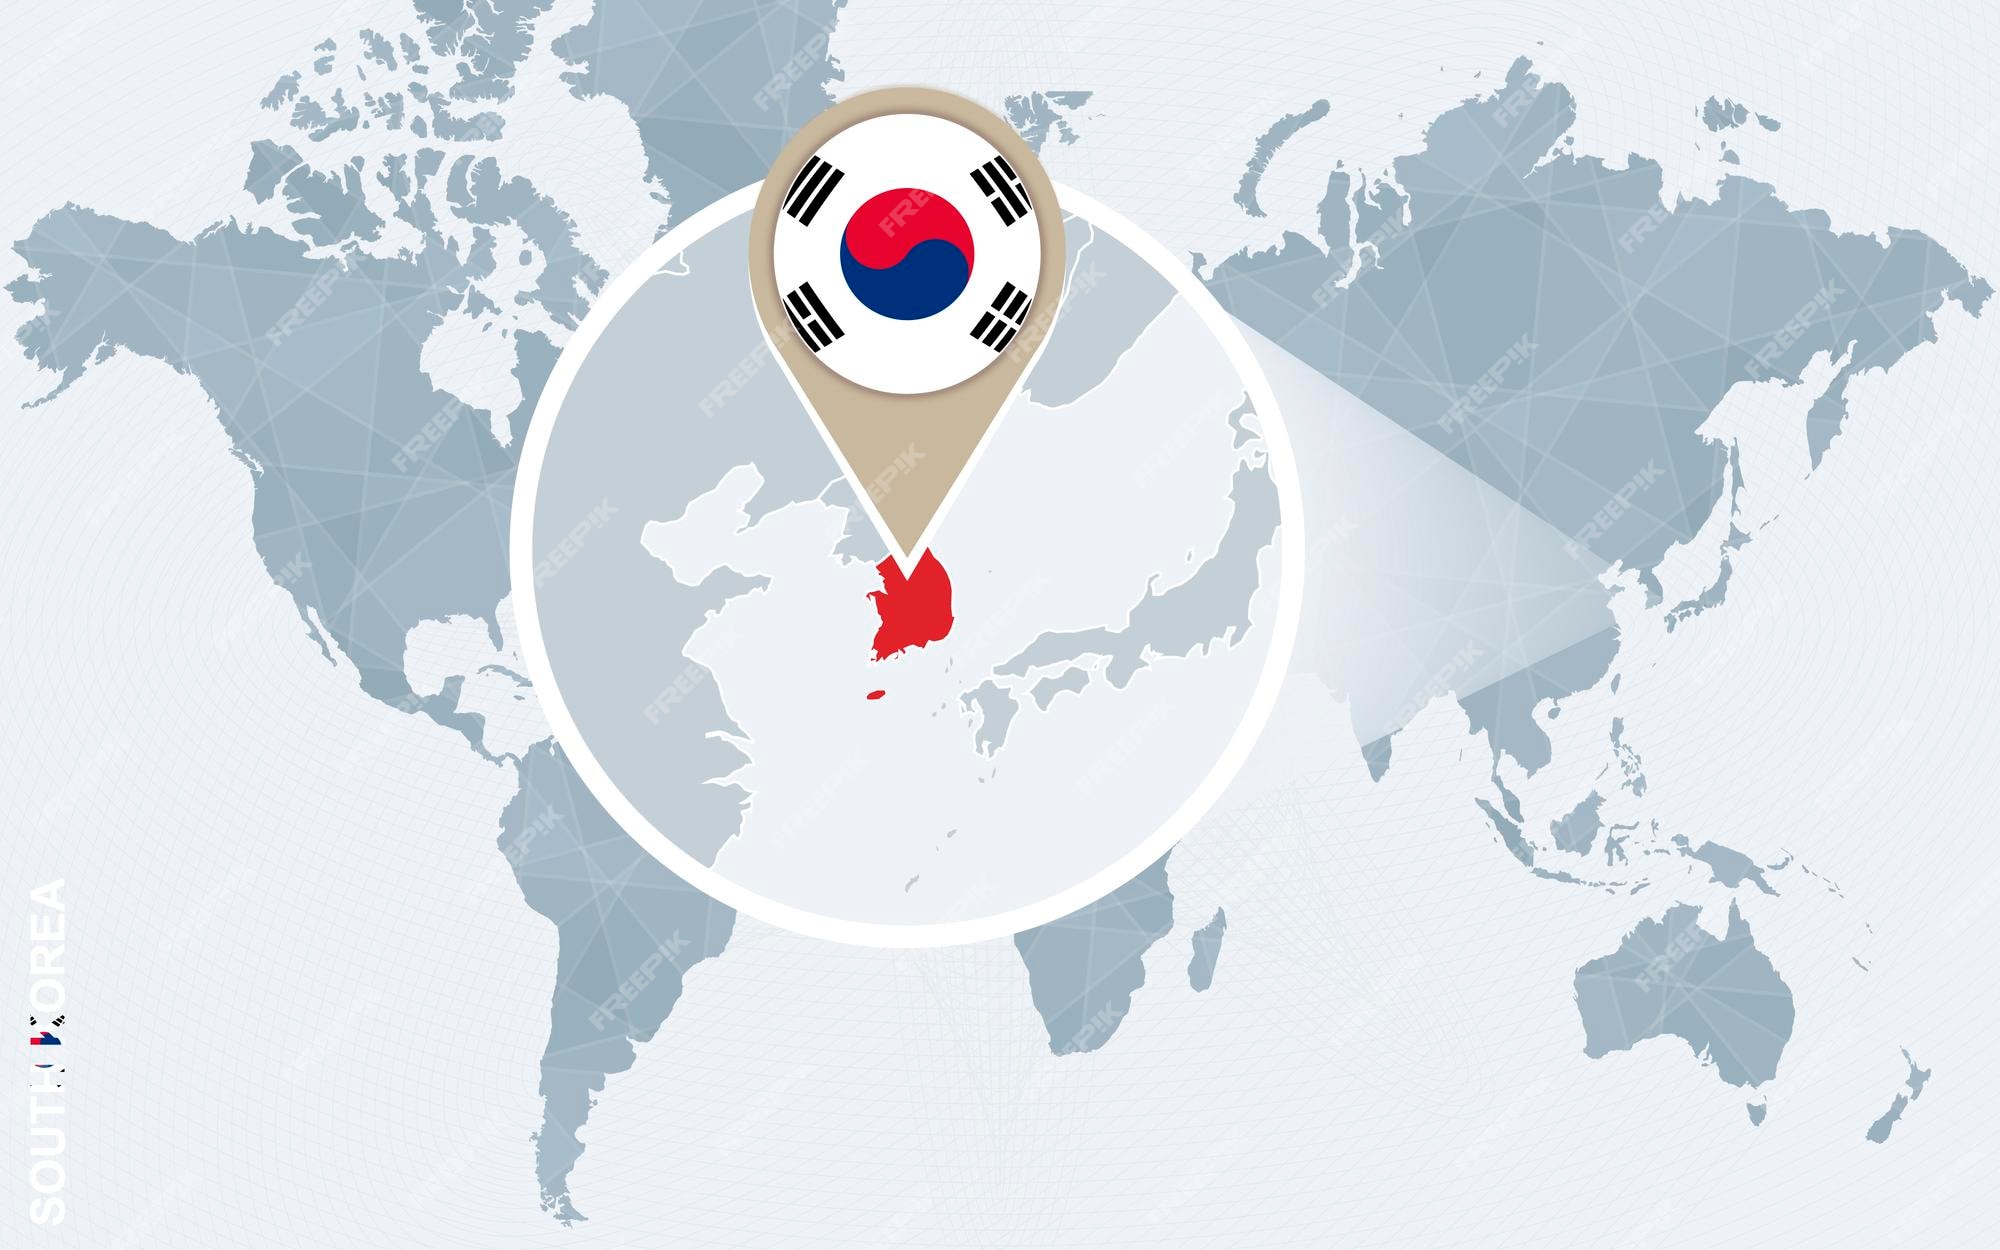 확대 된 한국 한국 국기와 지도 벡터 일러스트와 함께 추상 파란색 세계 지도 | 프리미엄 벡터